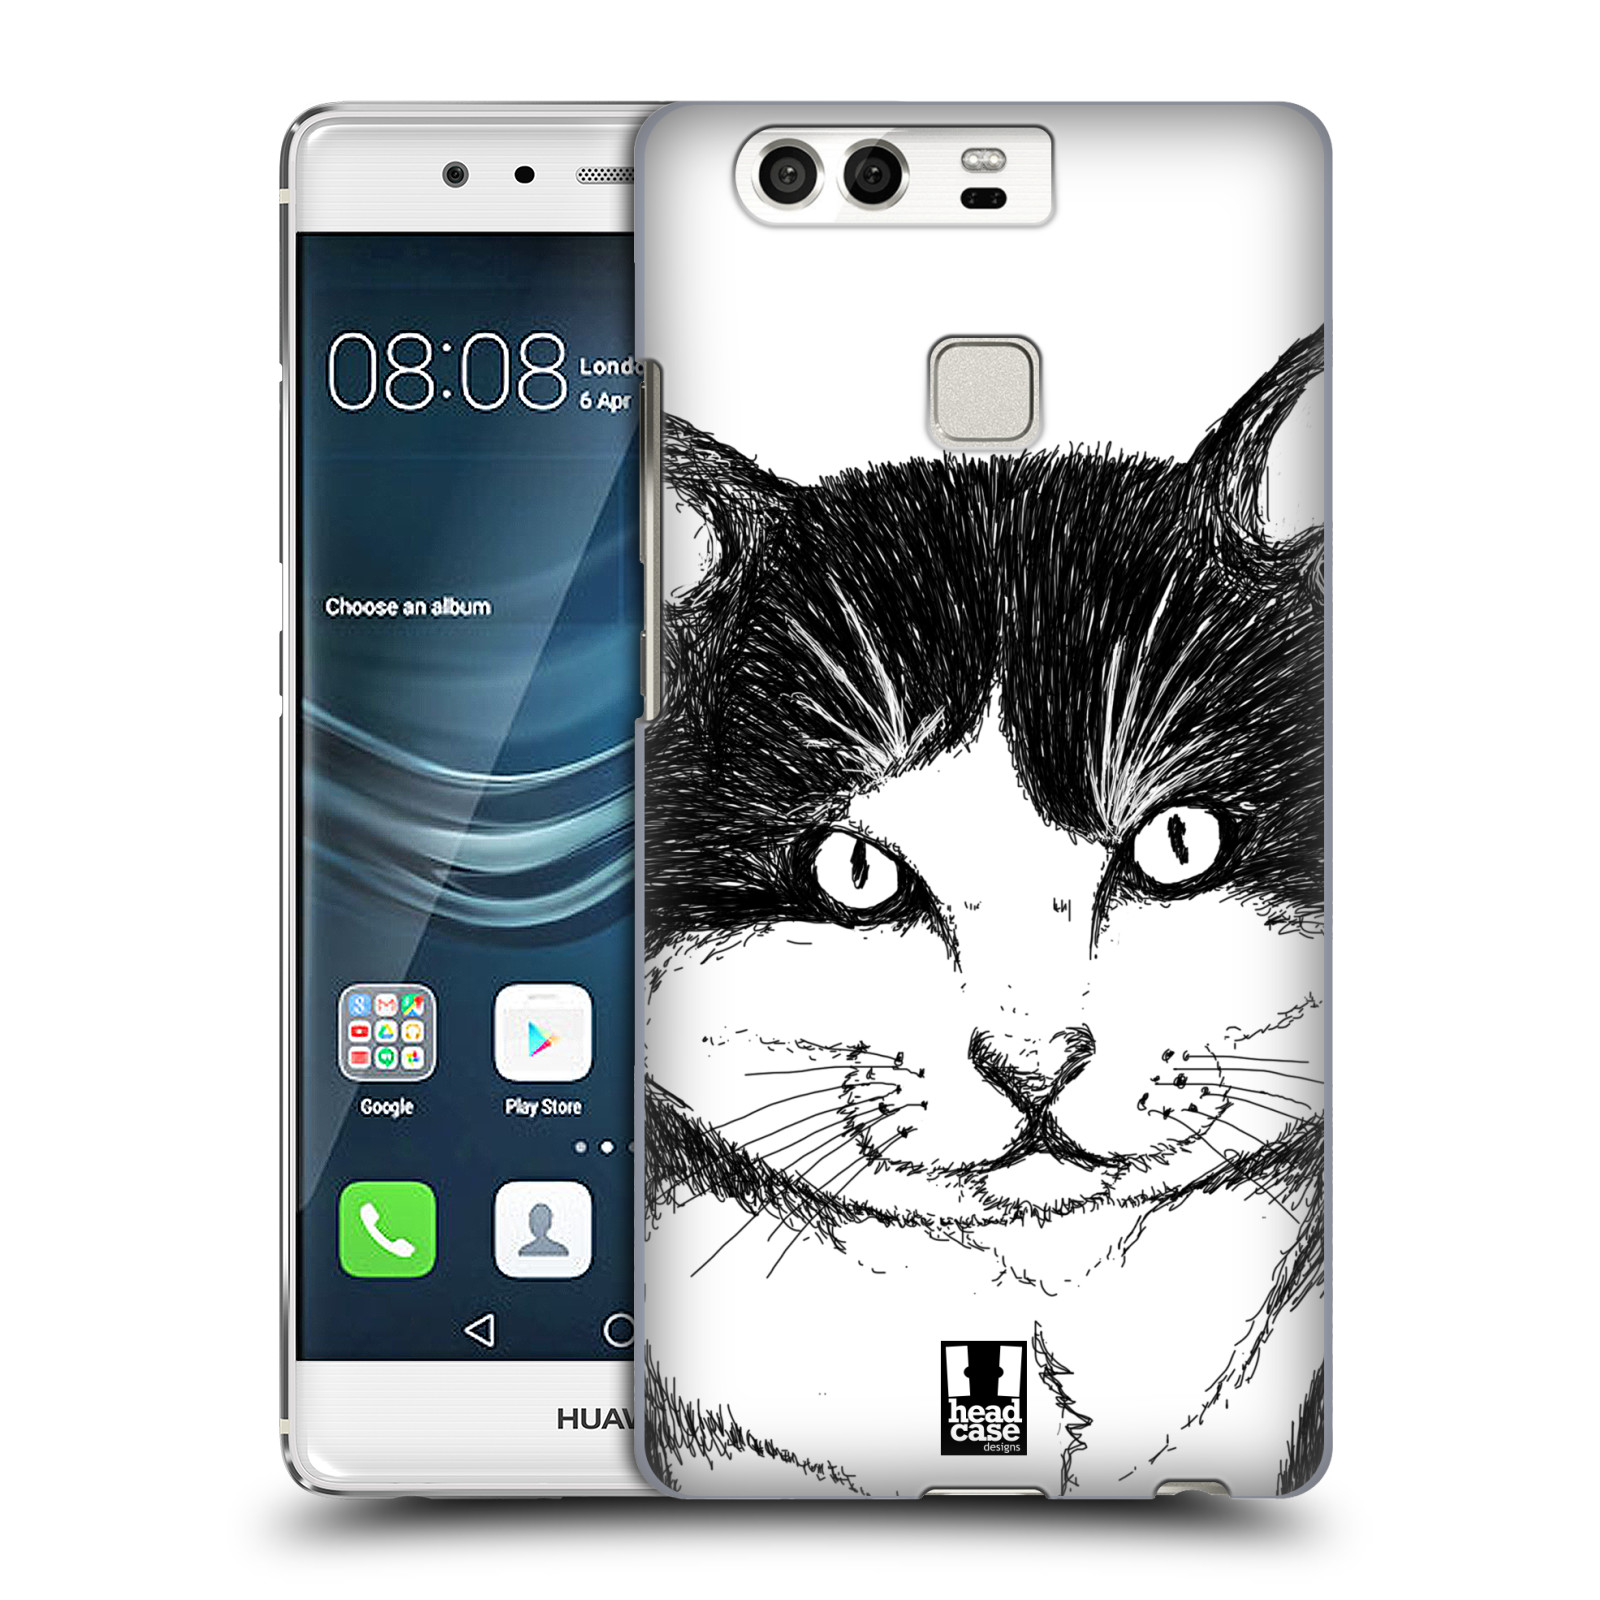 HEAD CASE plastový obal na mobil Huawei P9 / P9 DUAL SIM vzor Kreslená zvířátka černá a bílá kočka